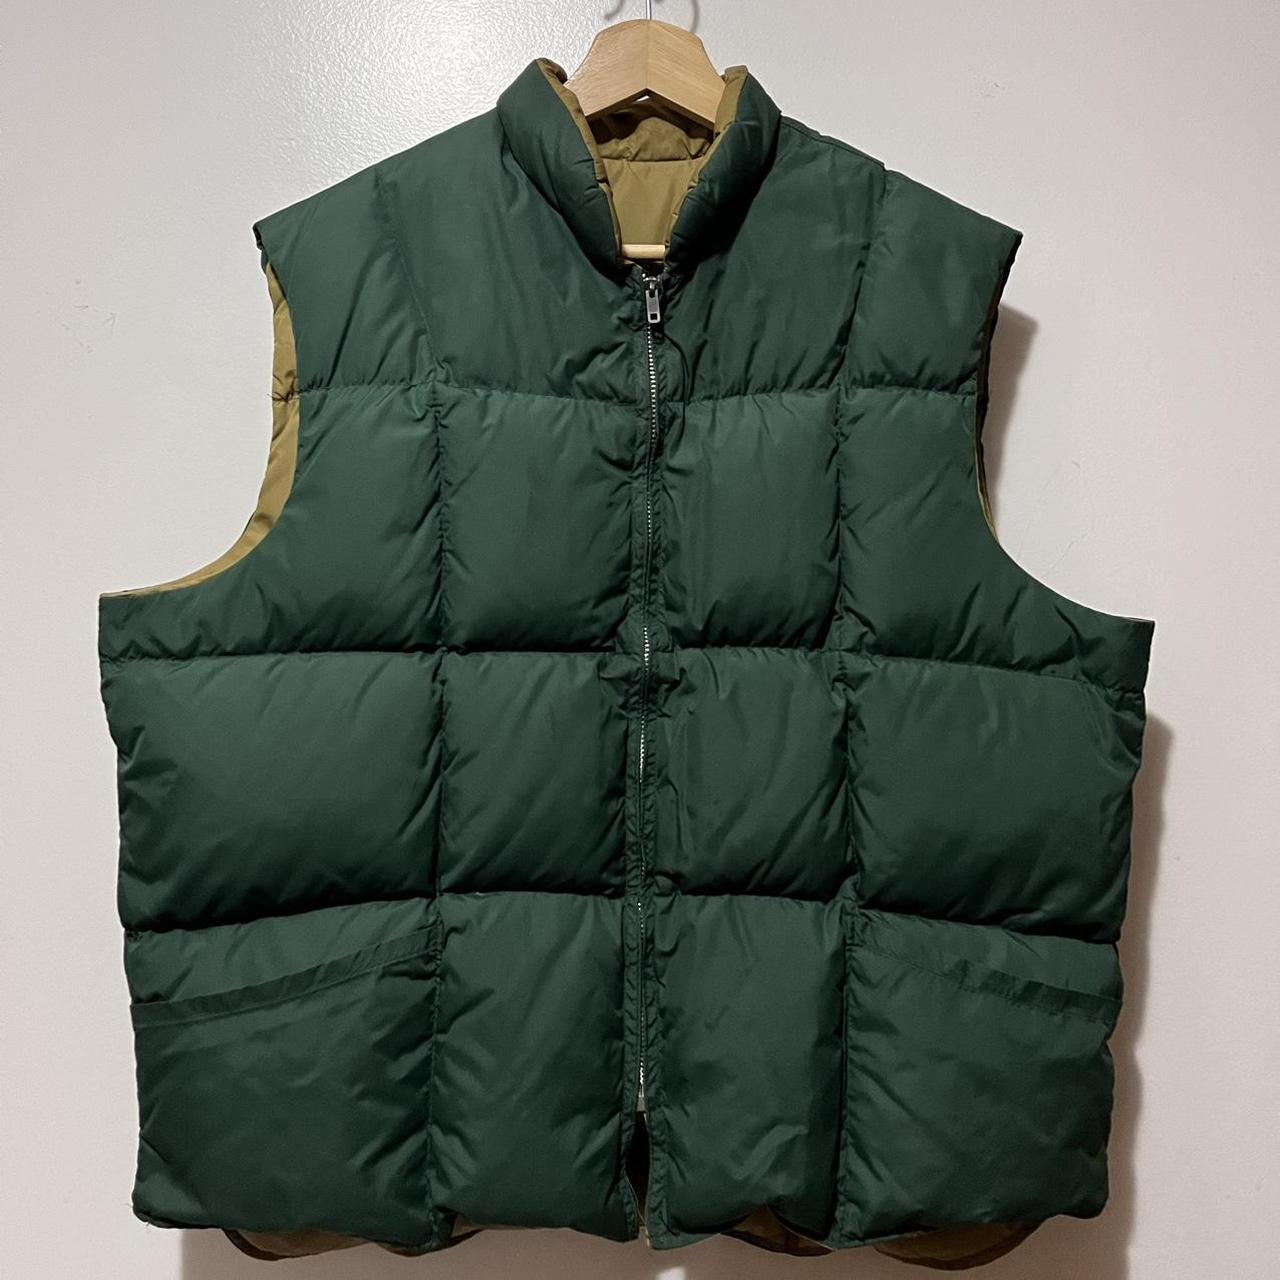 Vintage North Face Vest Size L 70s Reversible Made... - Depop